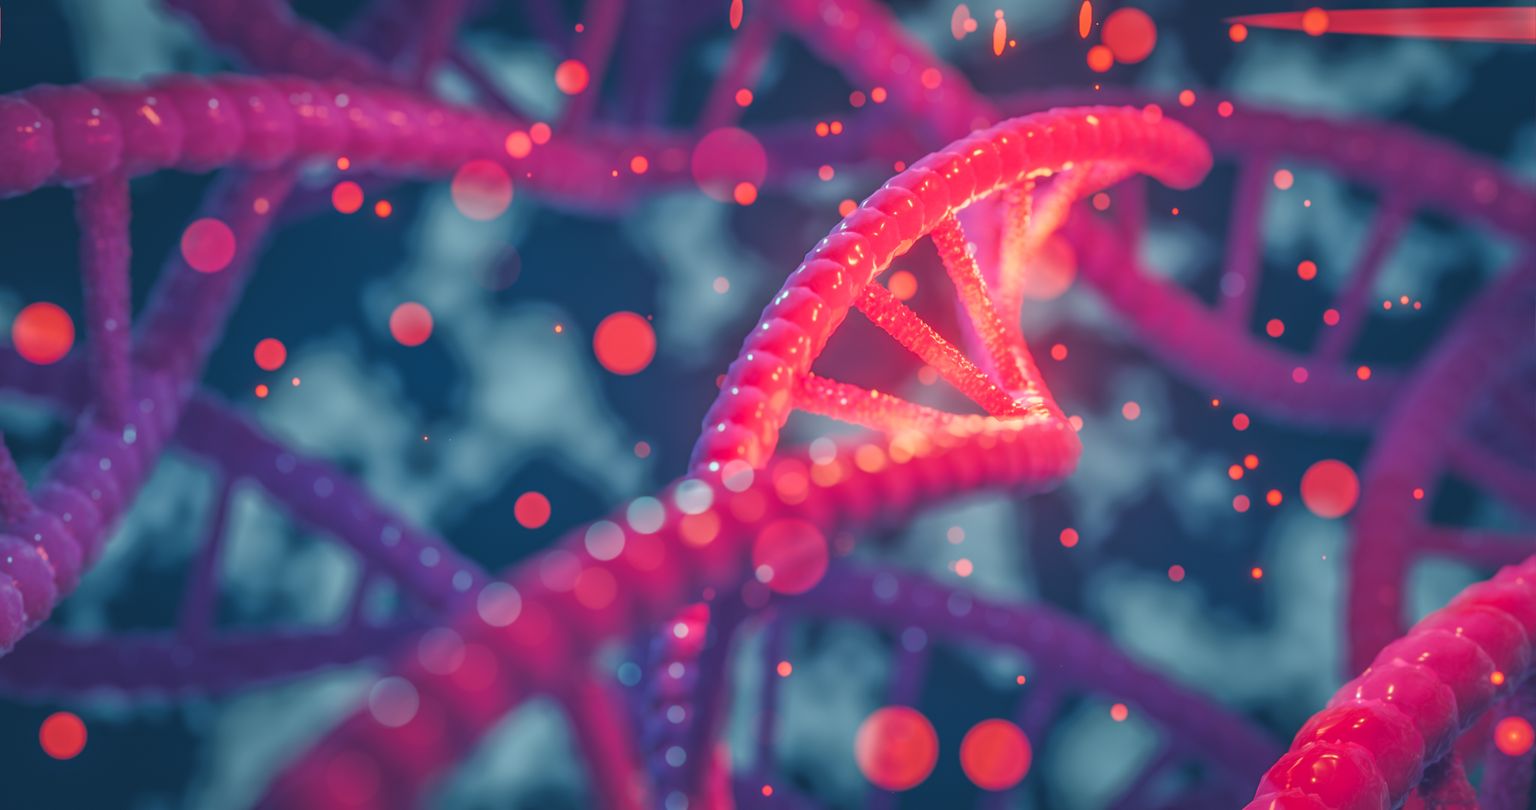 Hélice de ADN genes coloreados cromosomas secuencia de ADN, estructura de ADN con brillo. Concepto de ciencia, ilustración 3d de fondo